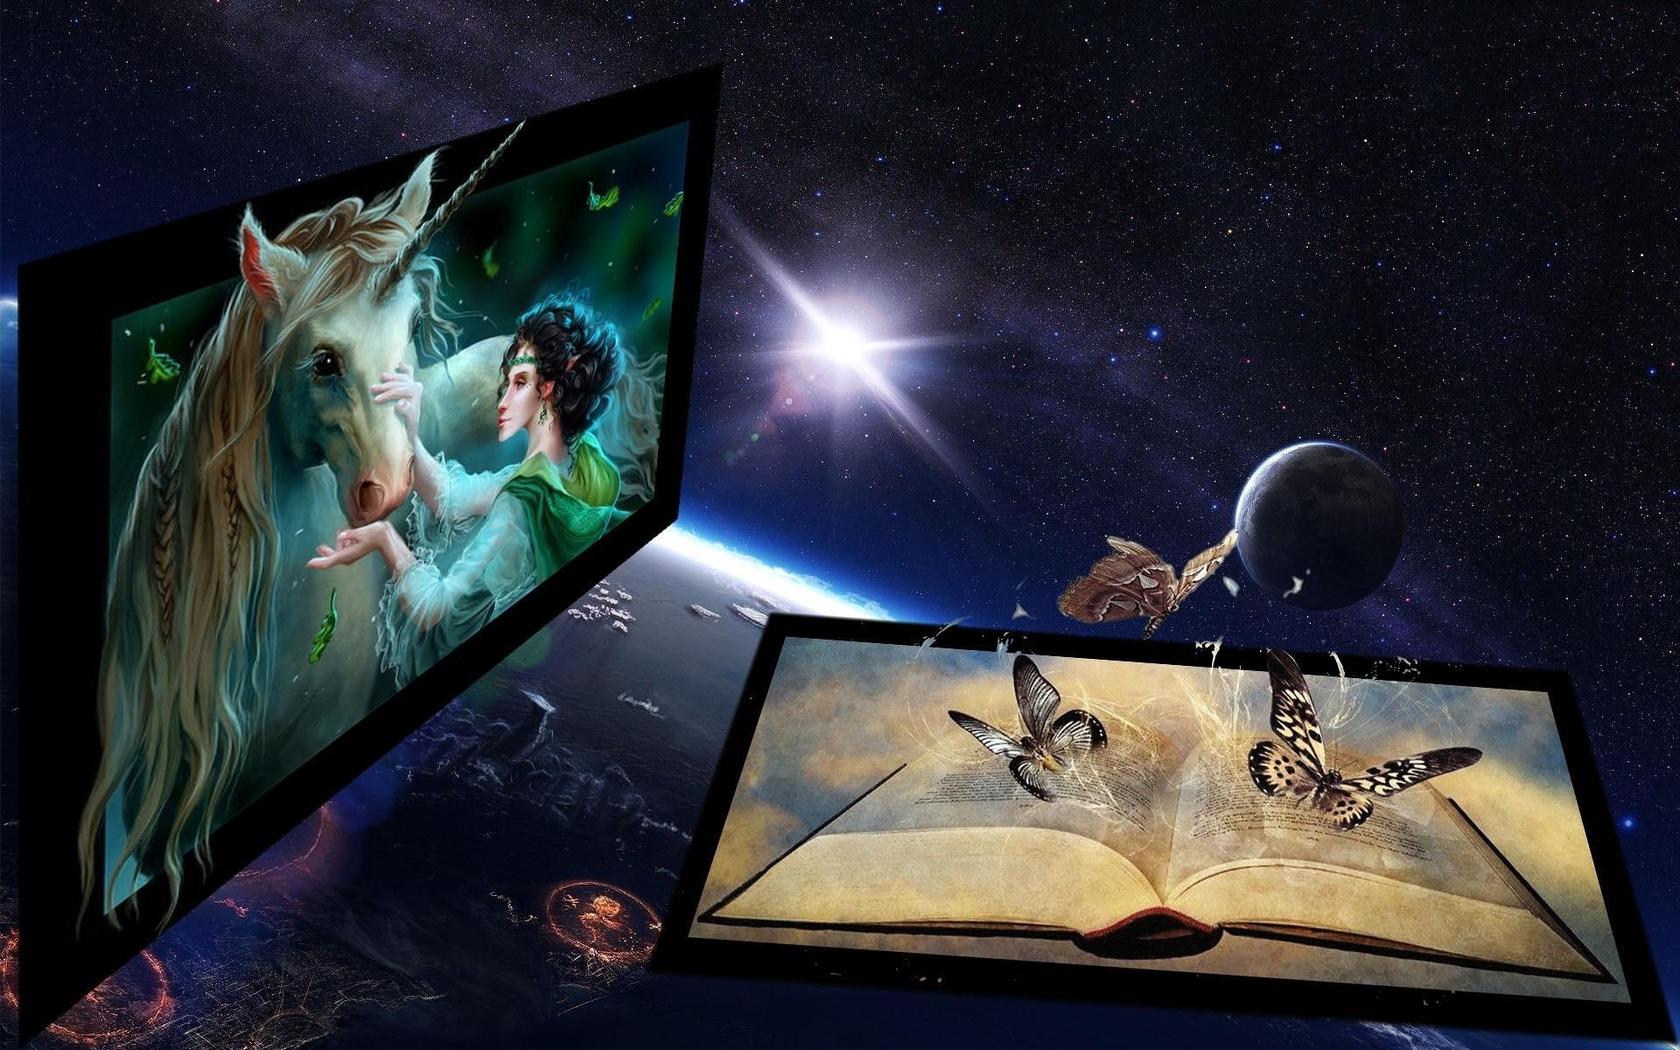 Descarga gratuita de fondo de pantalla para móvil de Fantasía, Mariposa, Espacio, Ciencia Ficción, Artístico, Unicornio.